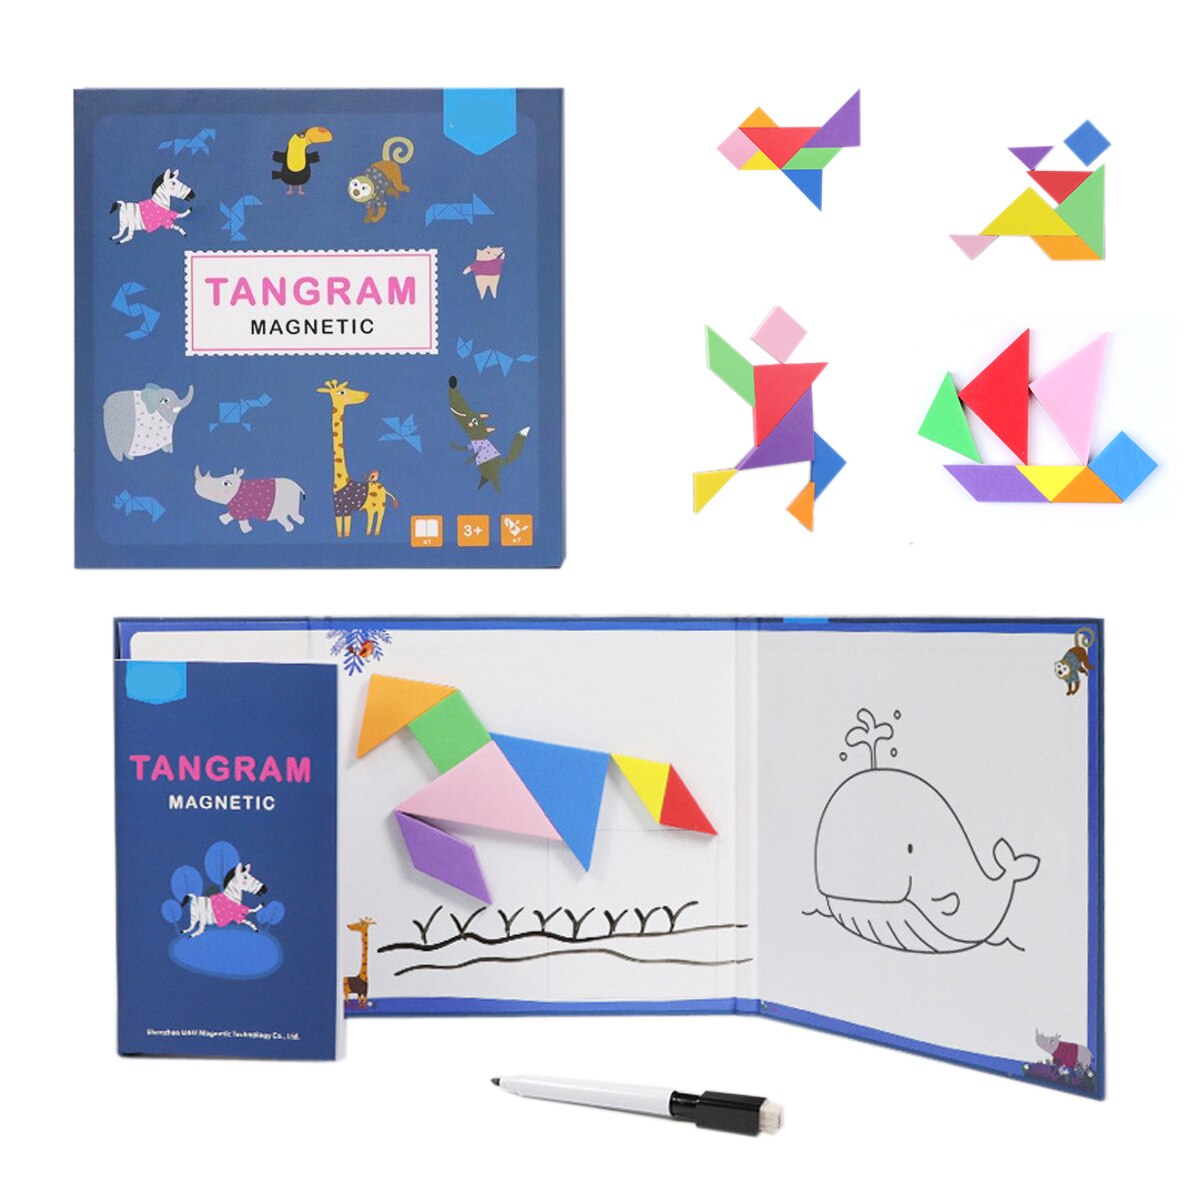 Magentisk mønster rejse tangram puslespil hvidt bræt til tegning af stilkspil puslespil hjernevridere legetøj til børn til voksne: Standardversion